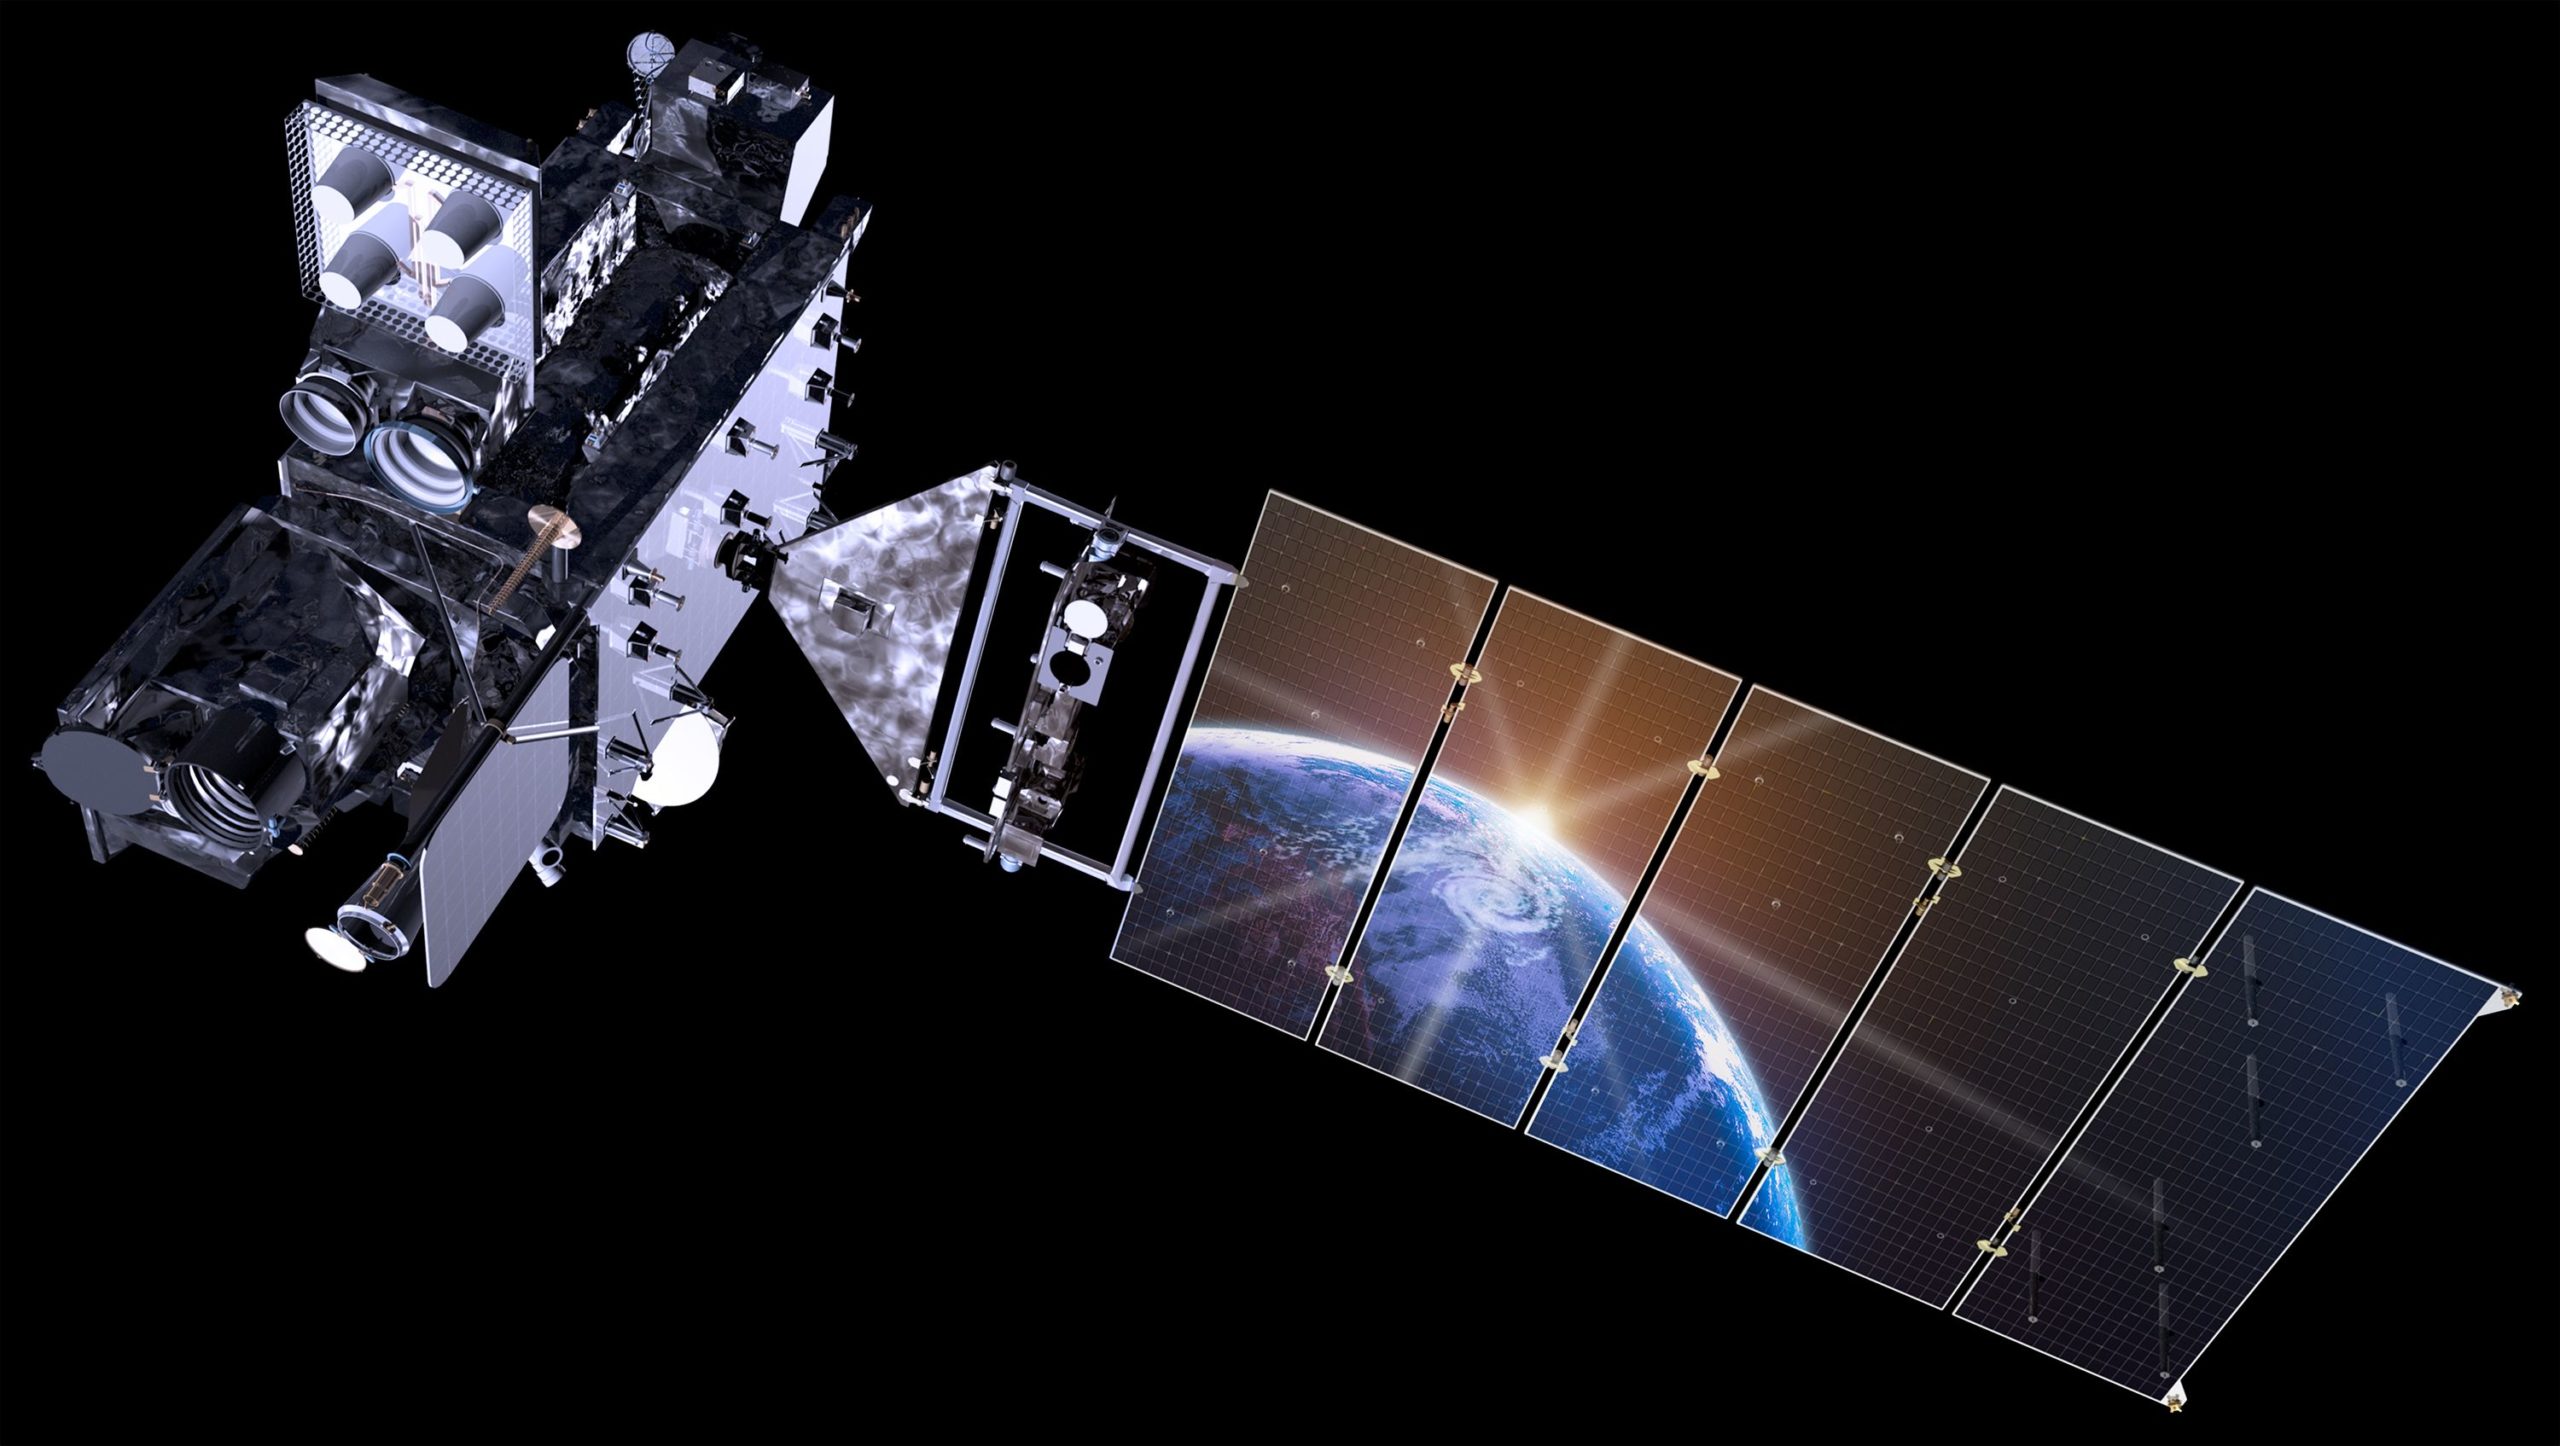 220203120315 01 noaa goes t weather satellite scaled - Новый европейский метеоспутник запущен на орбиту Земли